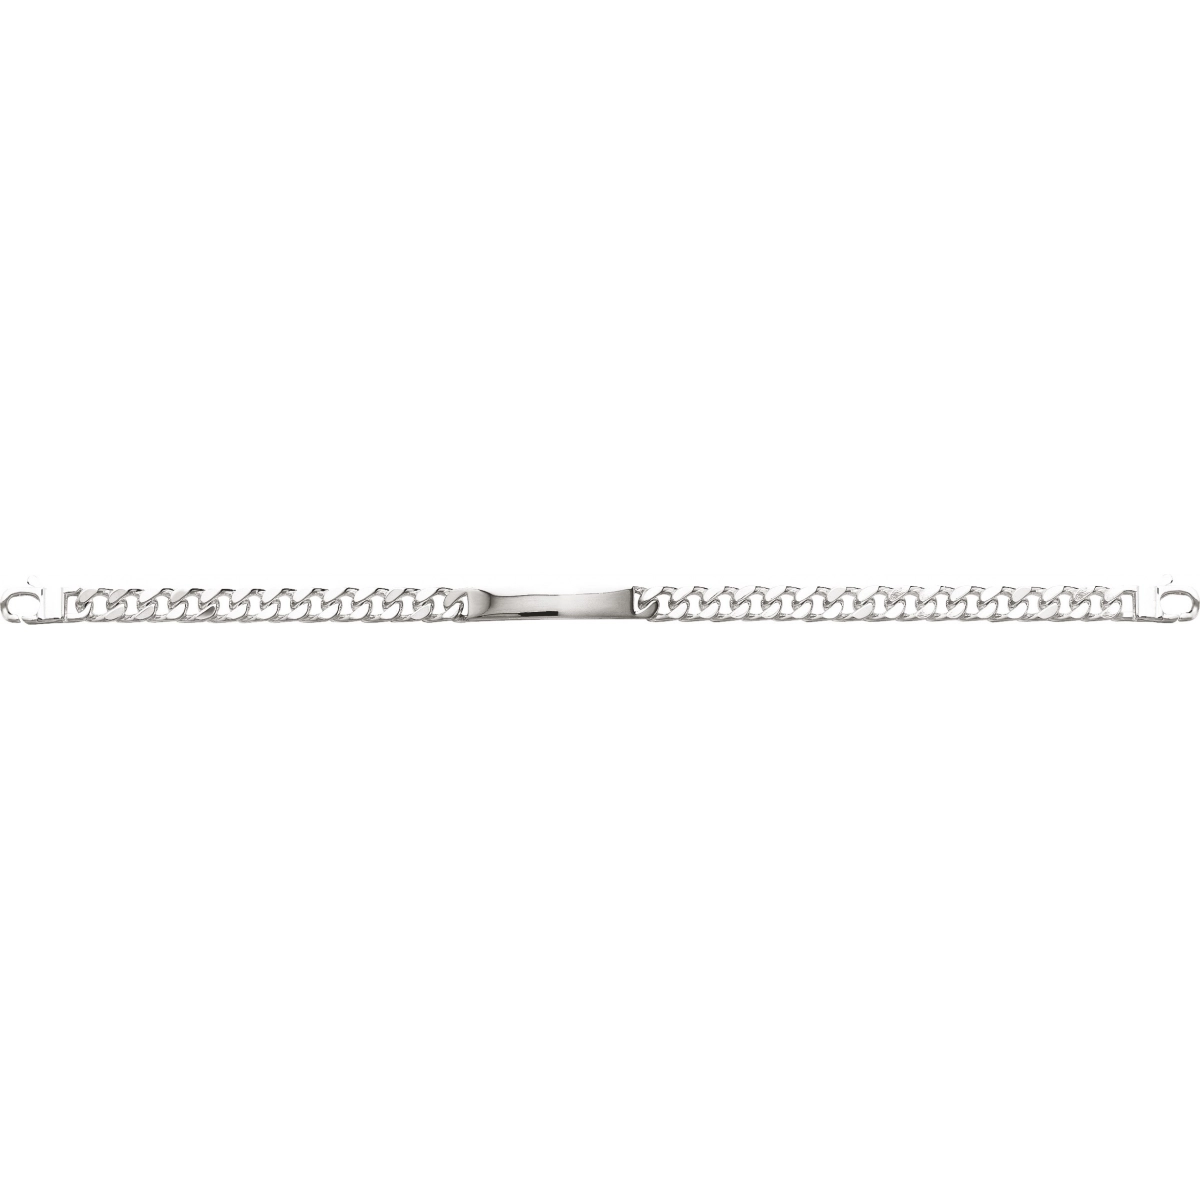 ID bracelet 6mm rh925 Silver - Size: 20  Lua Blanca  304001.00.20